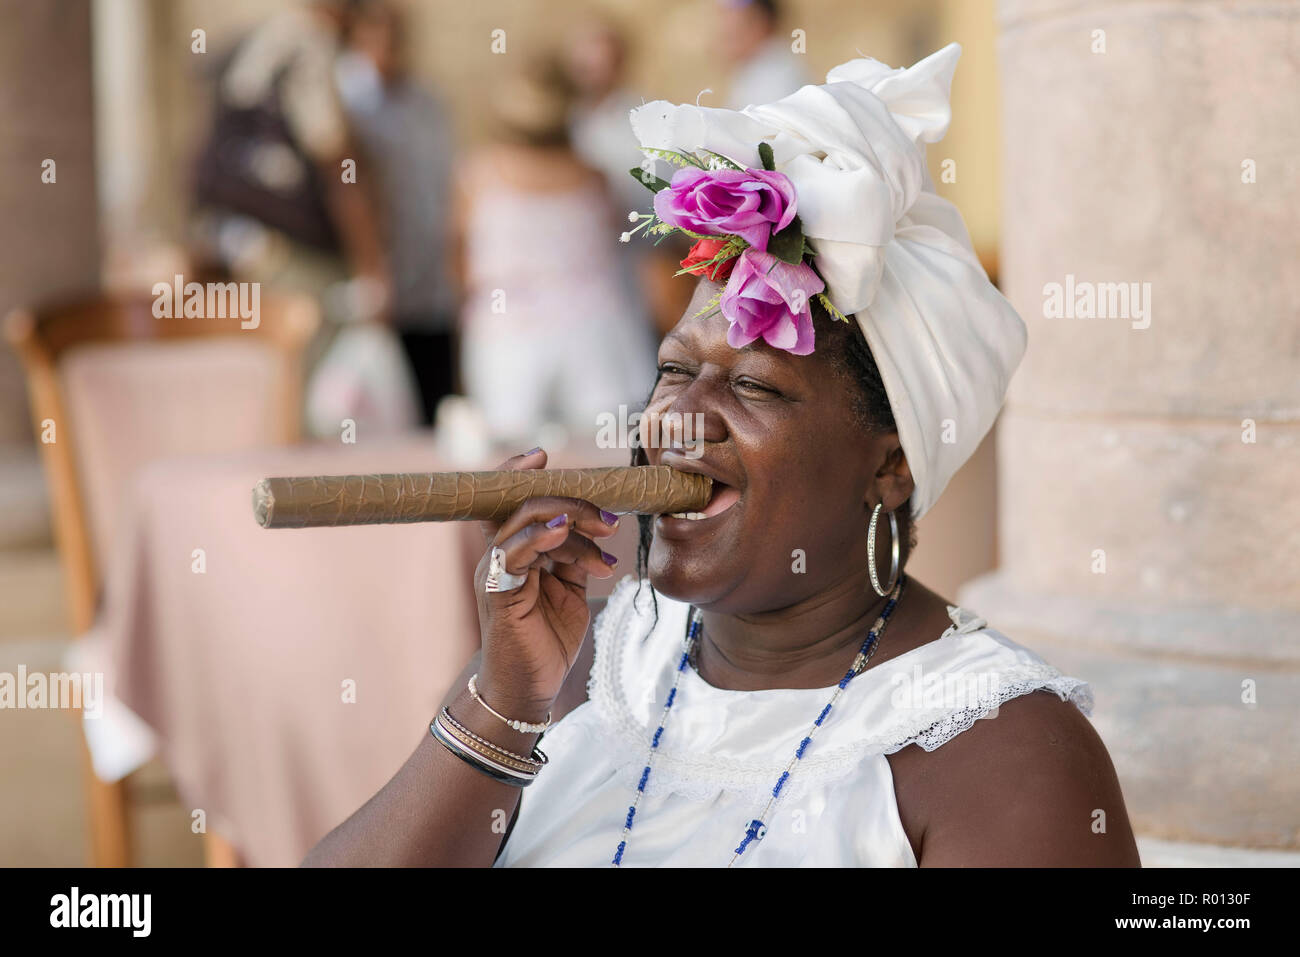 Theresa, eine fortunte Erzähler, stellt mit einem riesigen kubanische Zigarre und einem ansteckenden Lächeln in einer Plaza in Havanna. Stockfoto